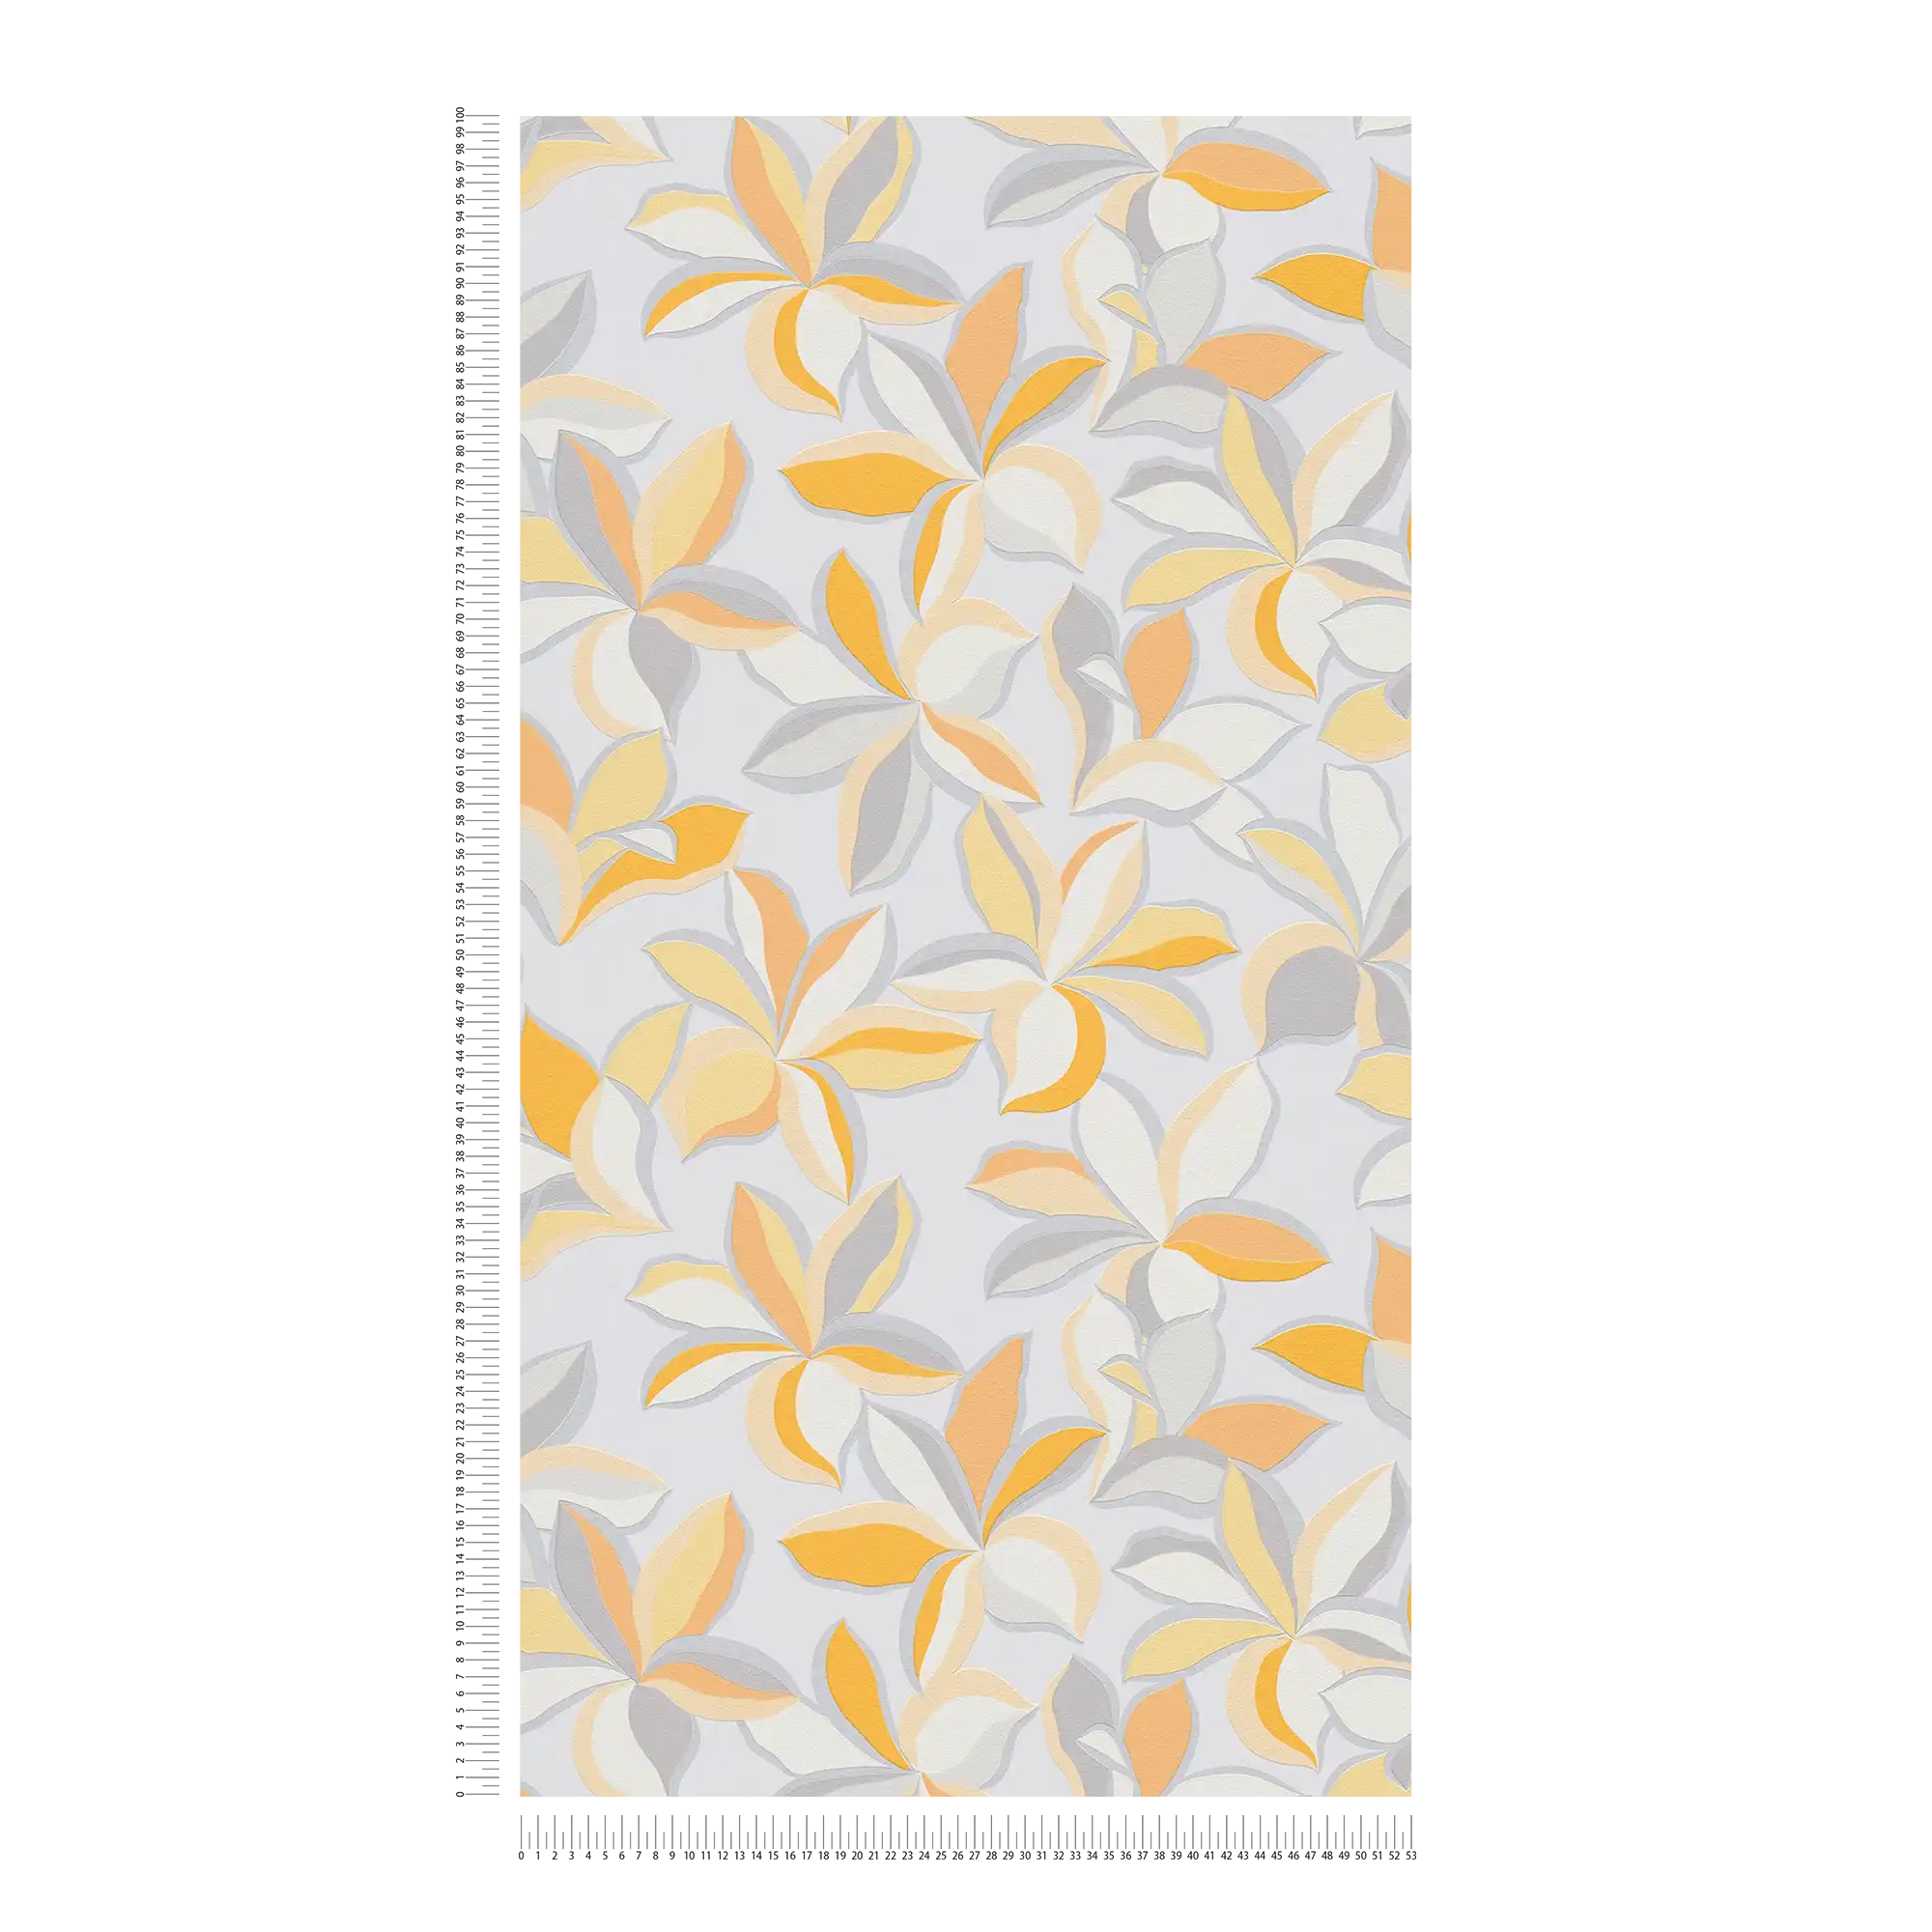             Carta da parati in tessuto non tessuto con motivo floreale e aspetto metallico - giallo, arancione, grigio
        